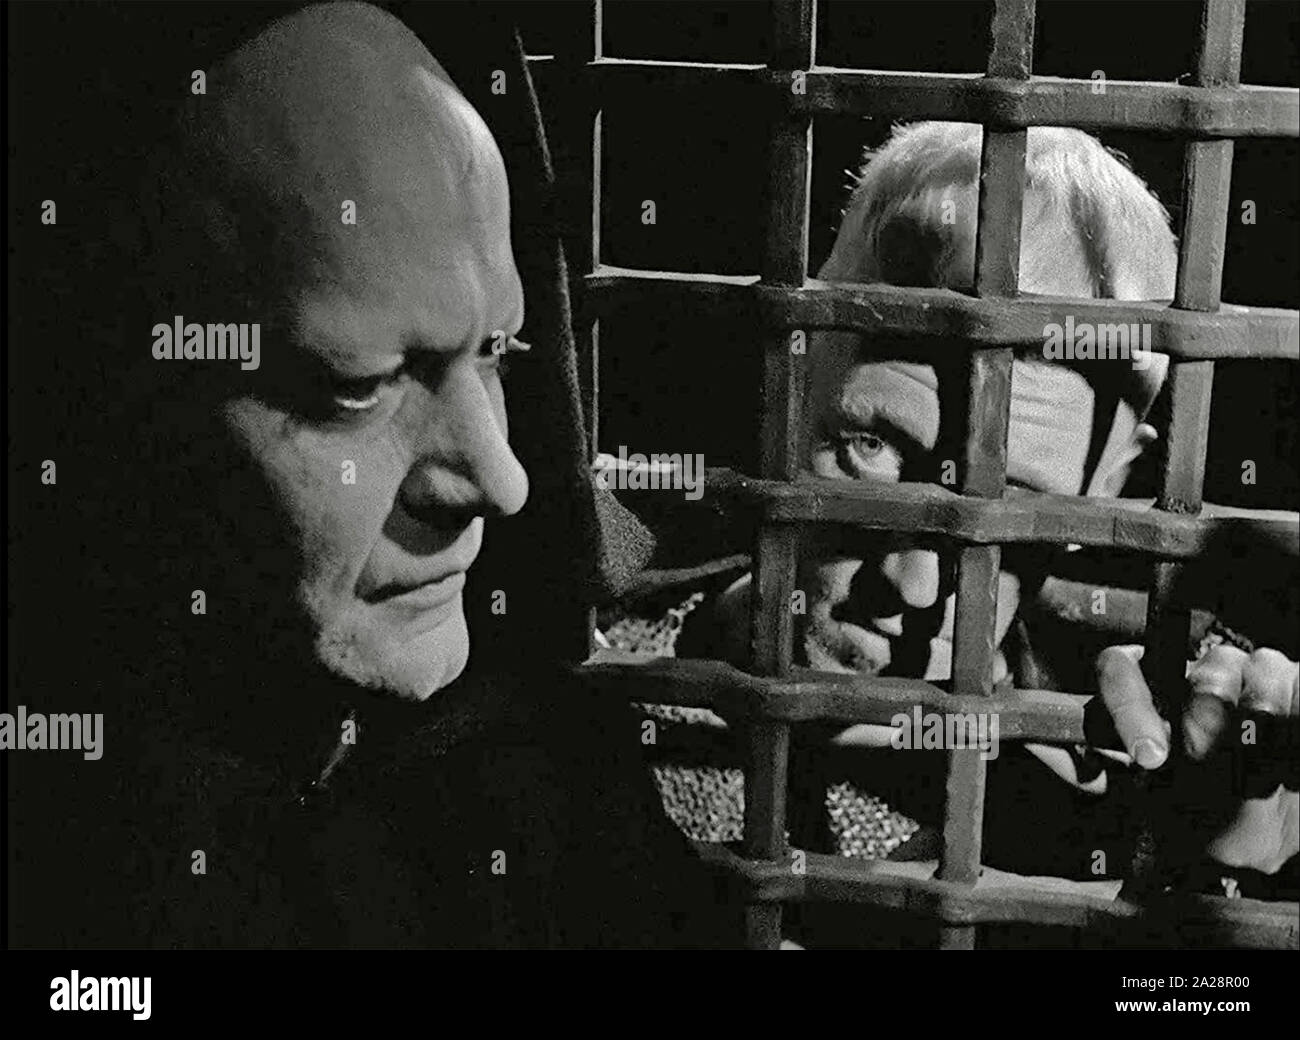 Il settimo sigillo 1957 Svensk Filmindustri produzione con Bengt Ekerot come la morte e Max von Sydow come il cavaliere Foto Stock